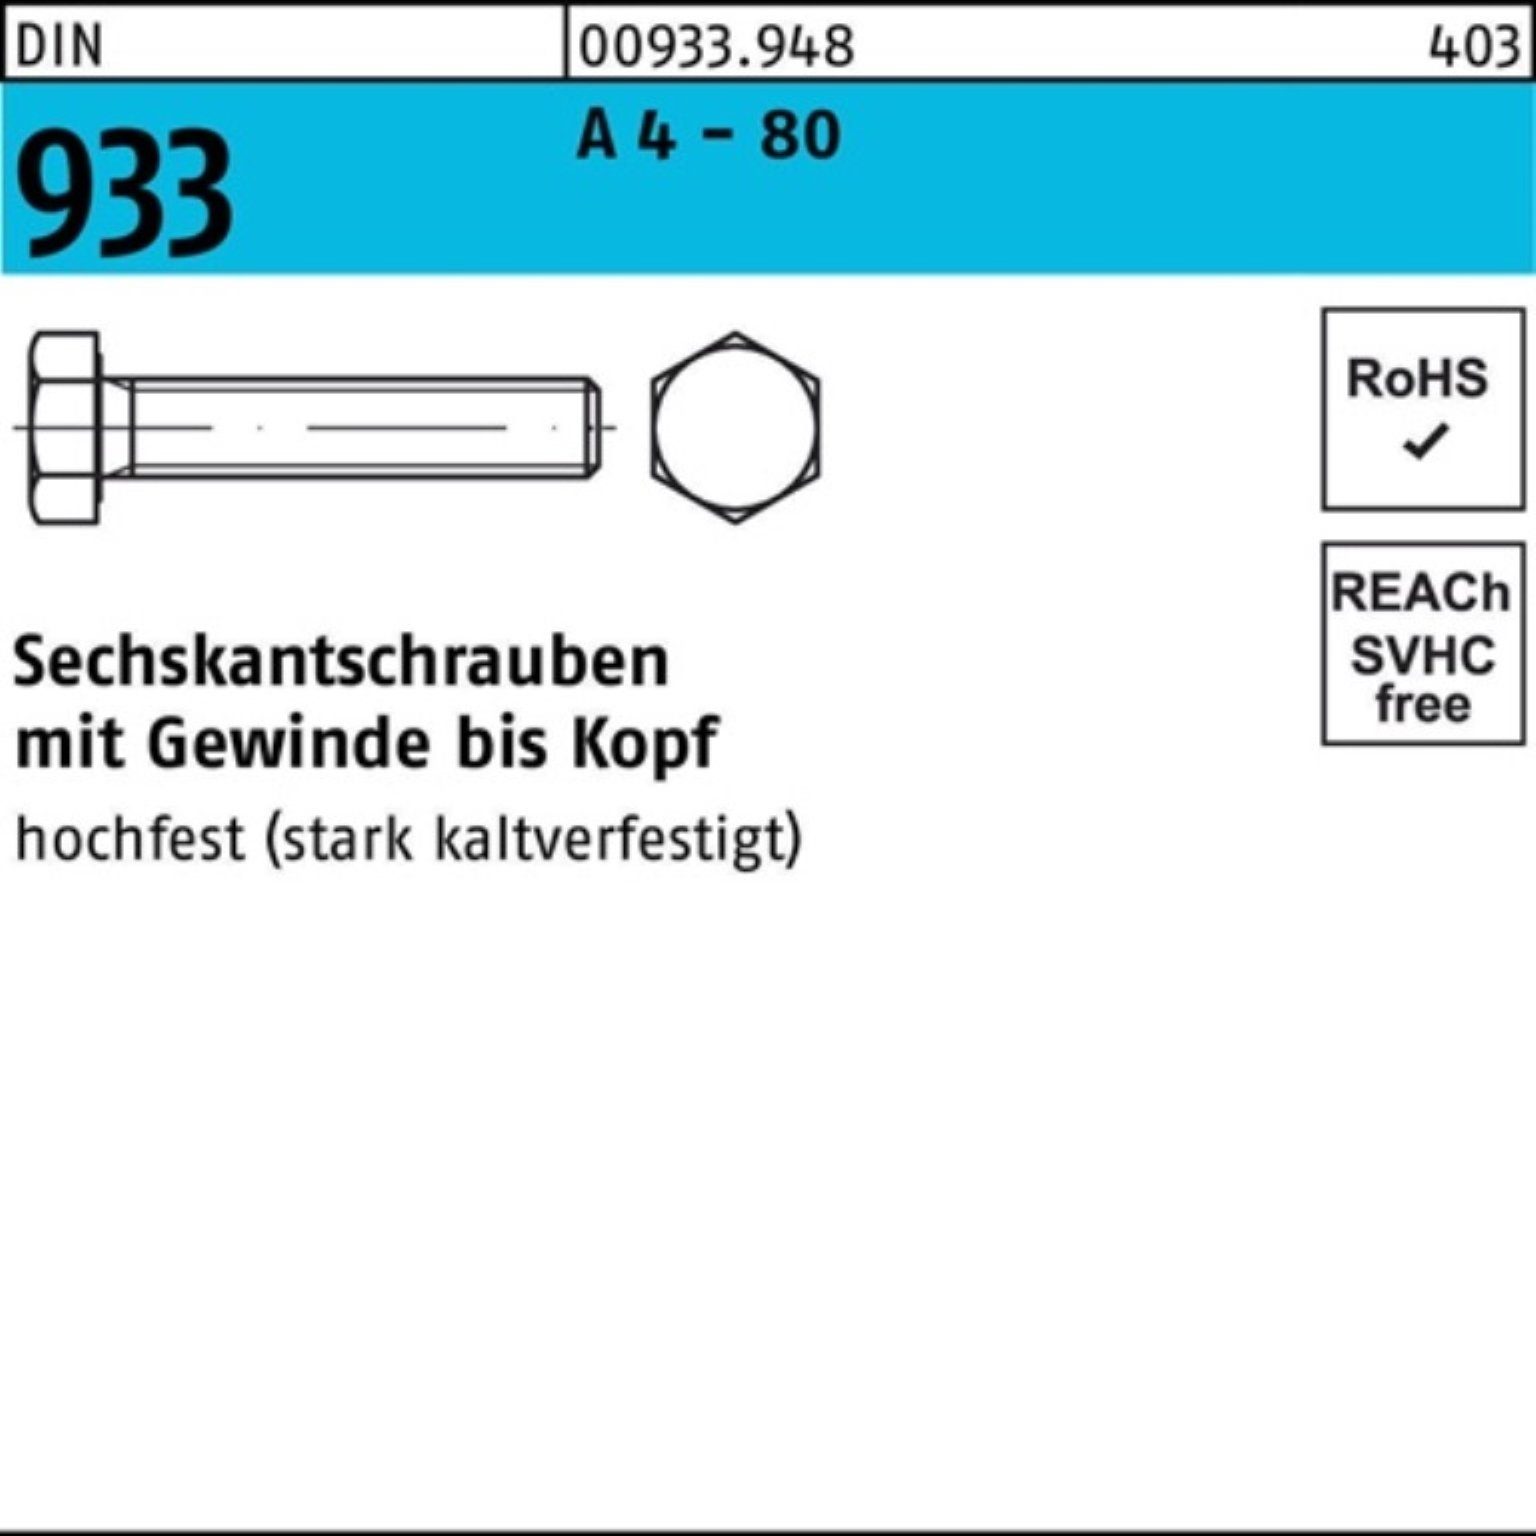 Reyher Sechskantschraube 100er Pack Sechskantschraube DIN 933 VG M16x 170 A 4 - 80 1 Stück DIN